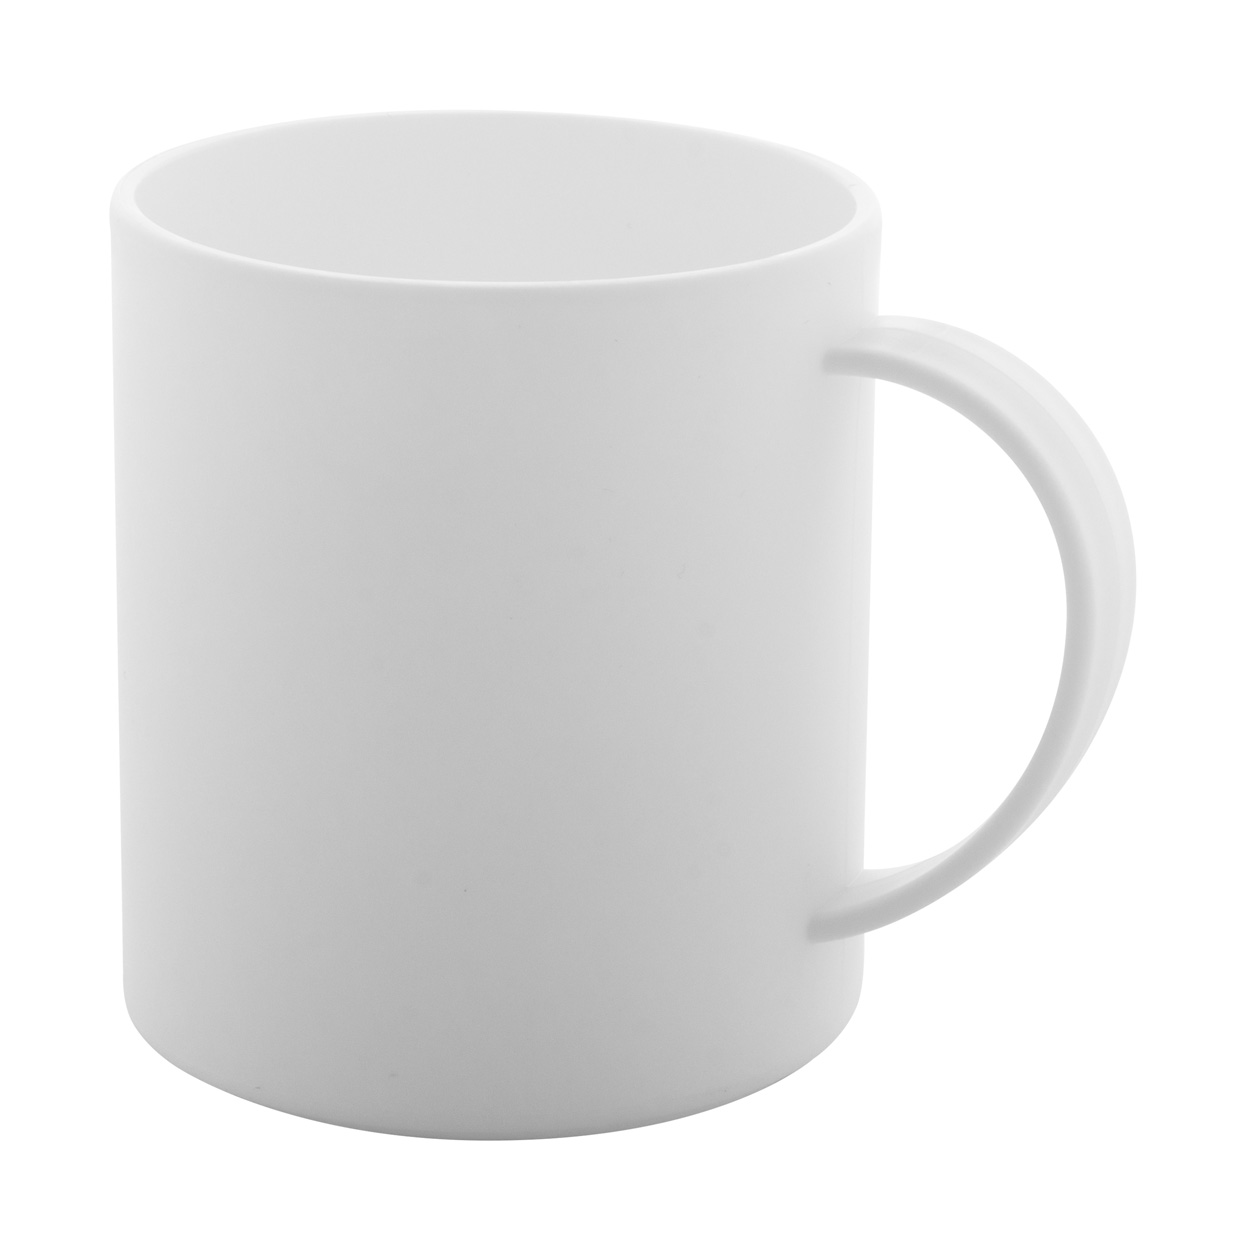 Promo  Plantex anti-bacterial mug